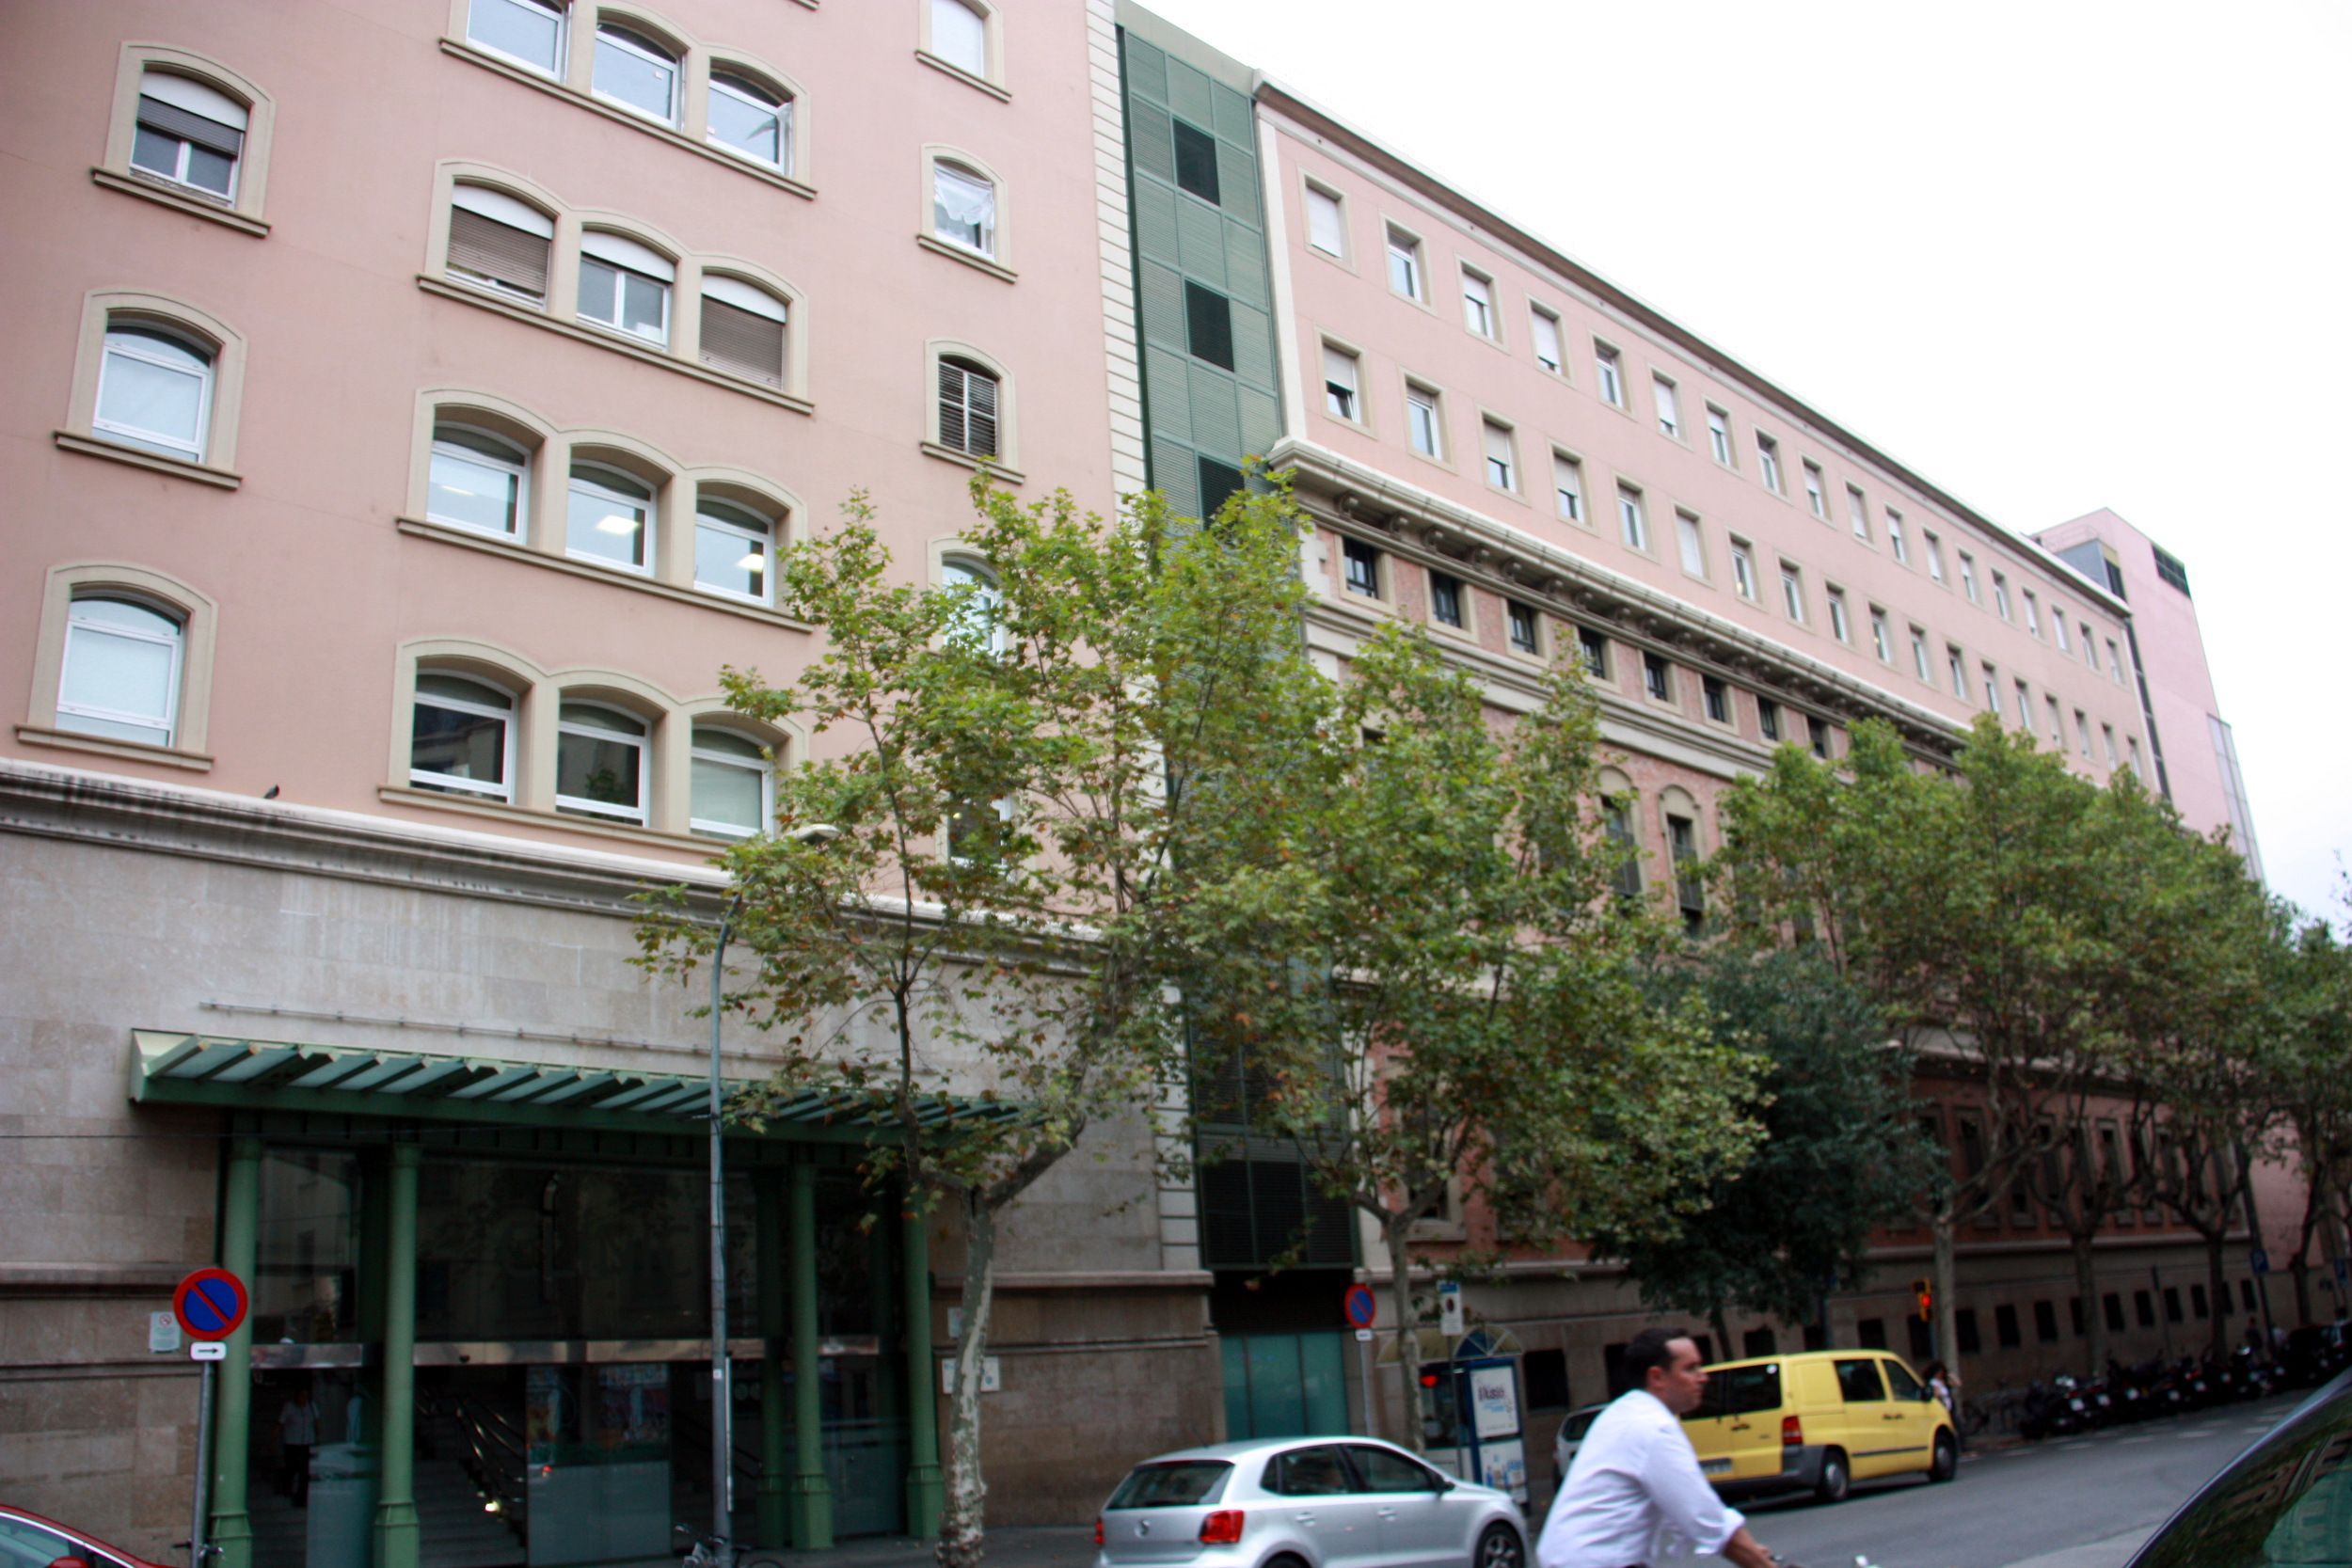 Cuatro hospitales catalanes entre los diez mejor valorados de España, según el IEH